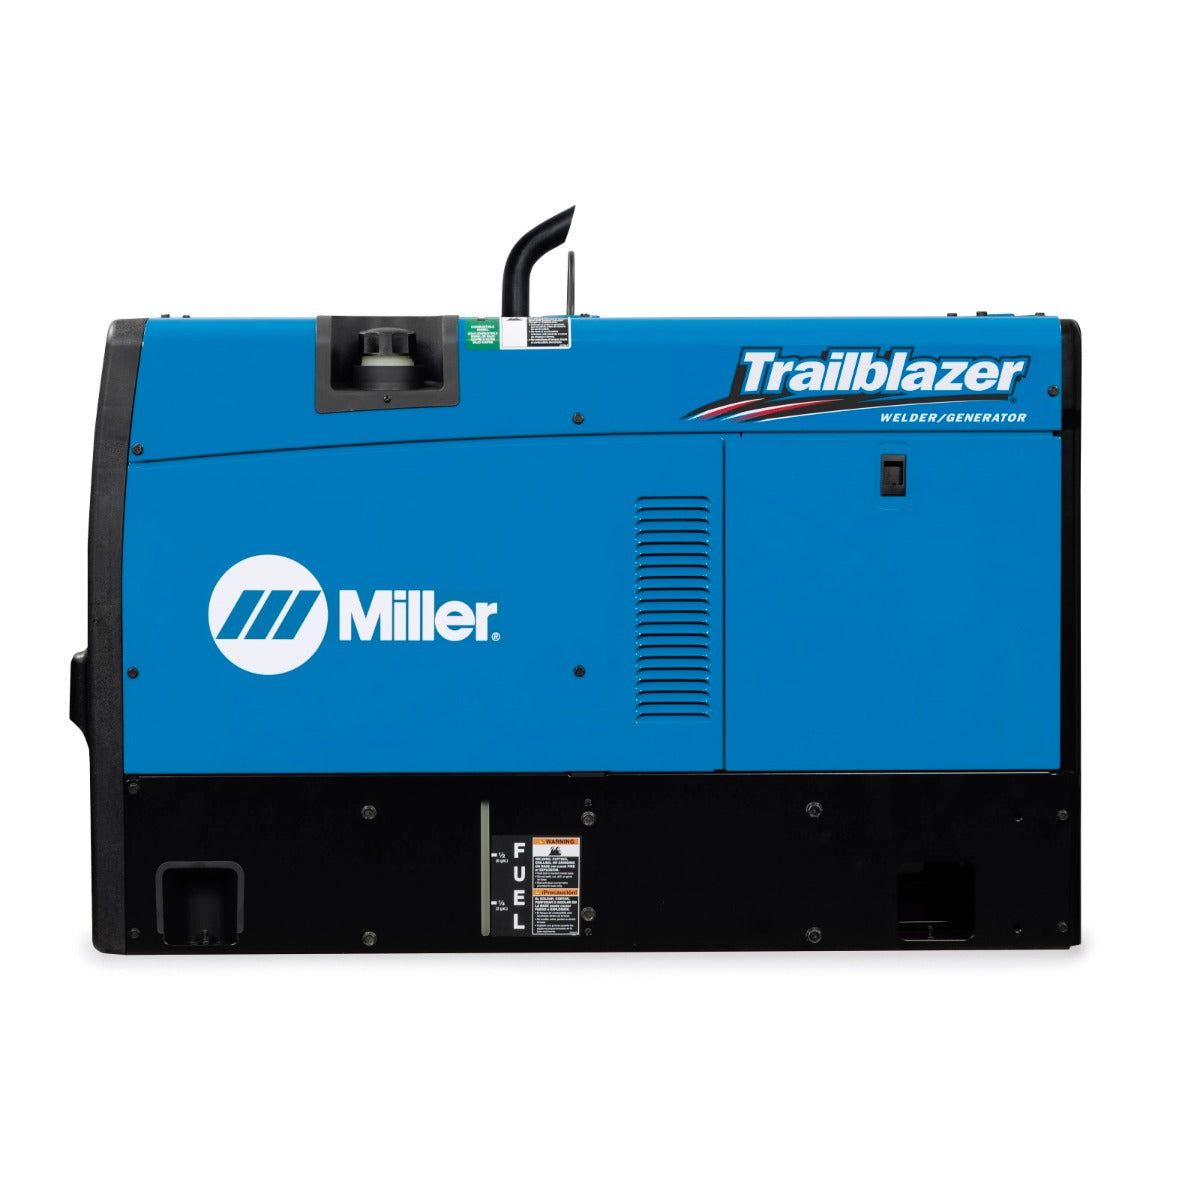 Miller Trailblazer 325 Kubota Diesel Welder/Generator w/ArcReach - 907799